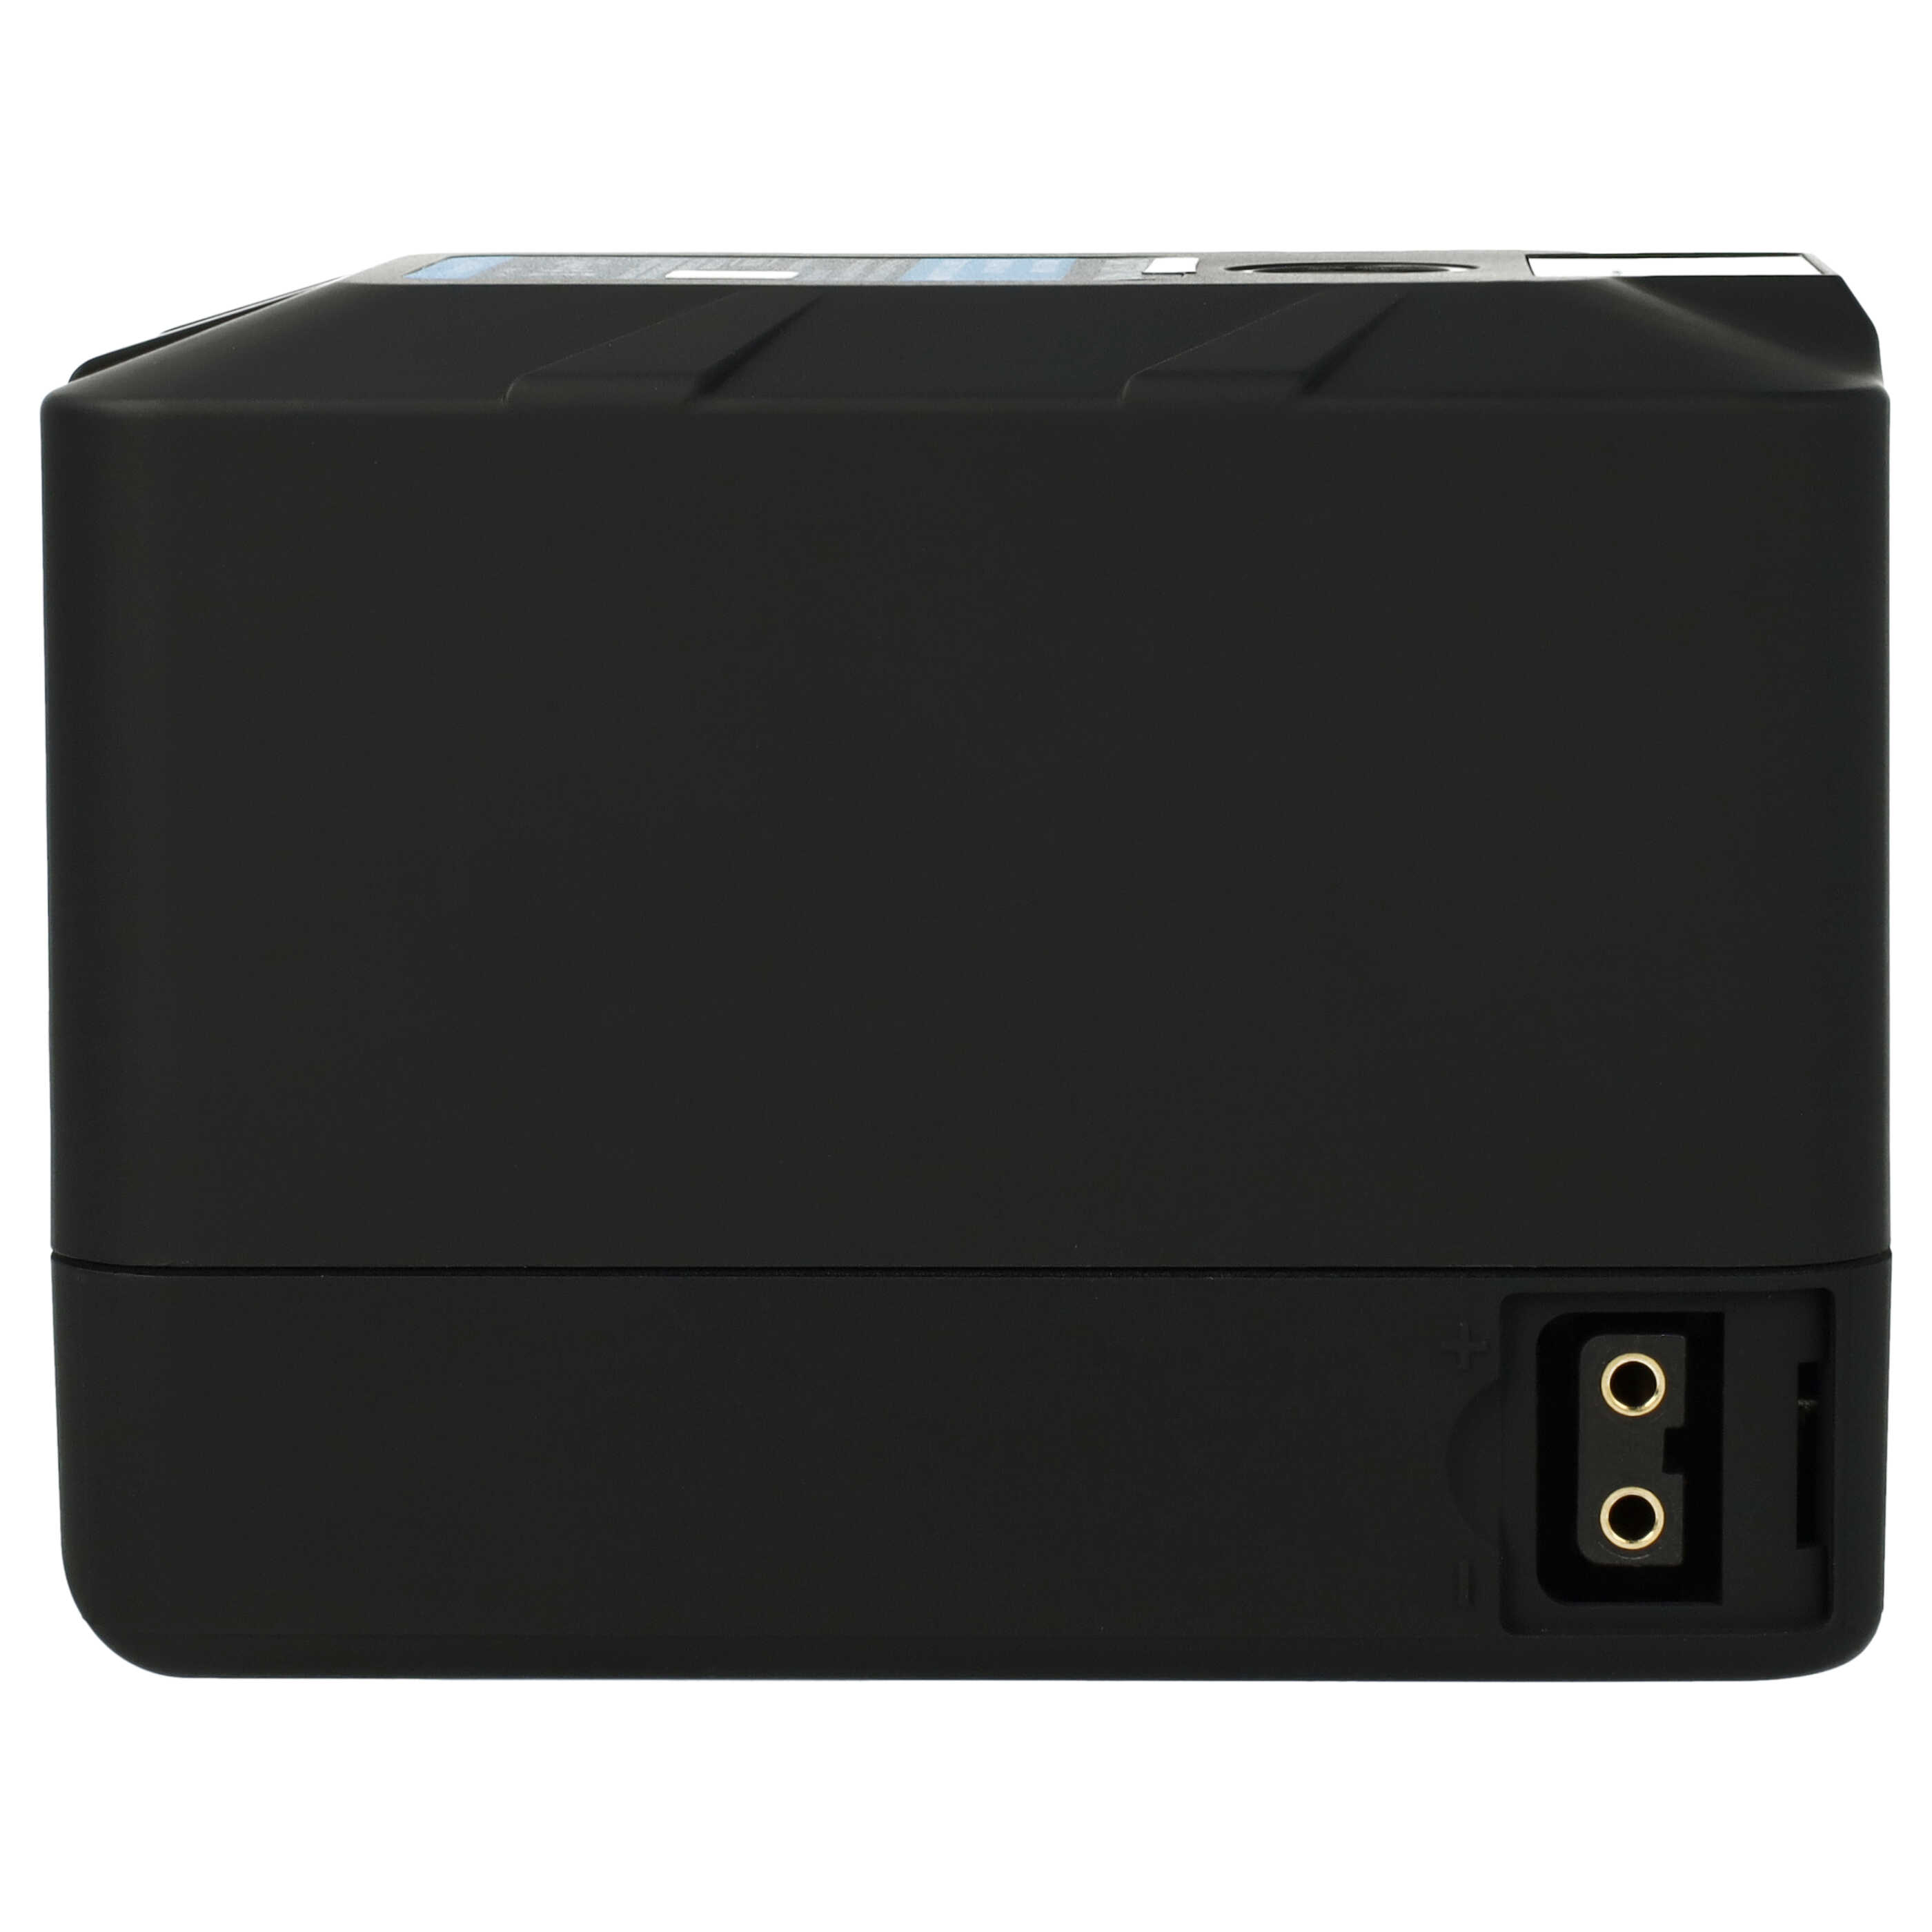 Kamera-Akku als Ersatz für Sony BP-190S, BP-150WS, BP-130L, BP-150W, BP-140A - 10200mAh 14,8V Li-Ion mit USB